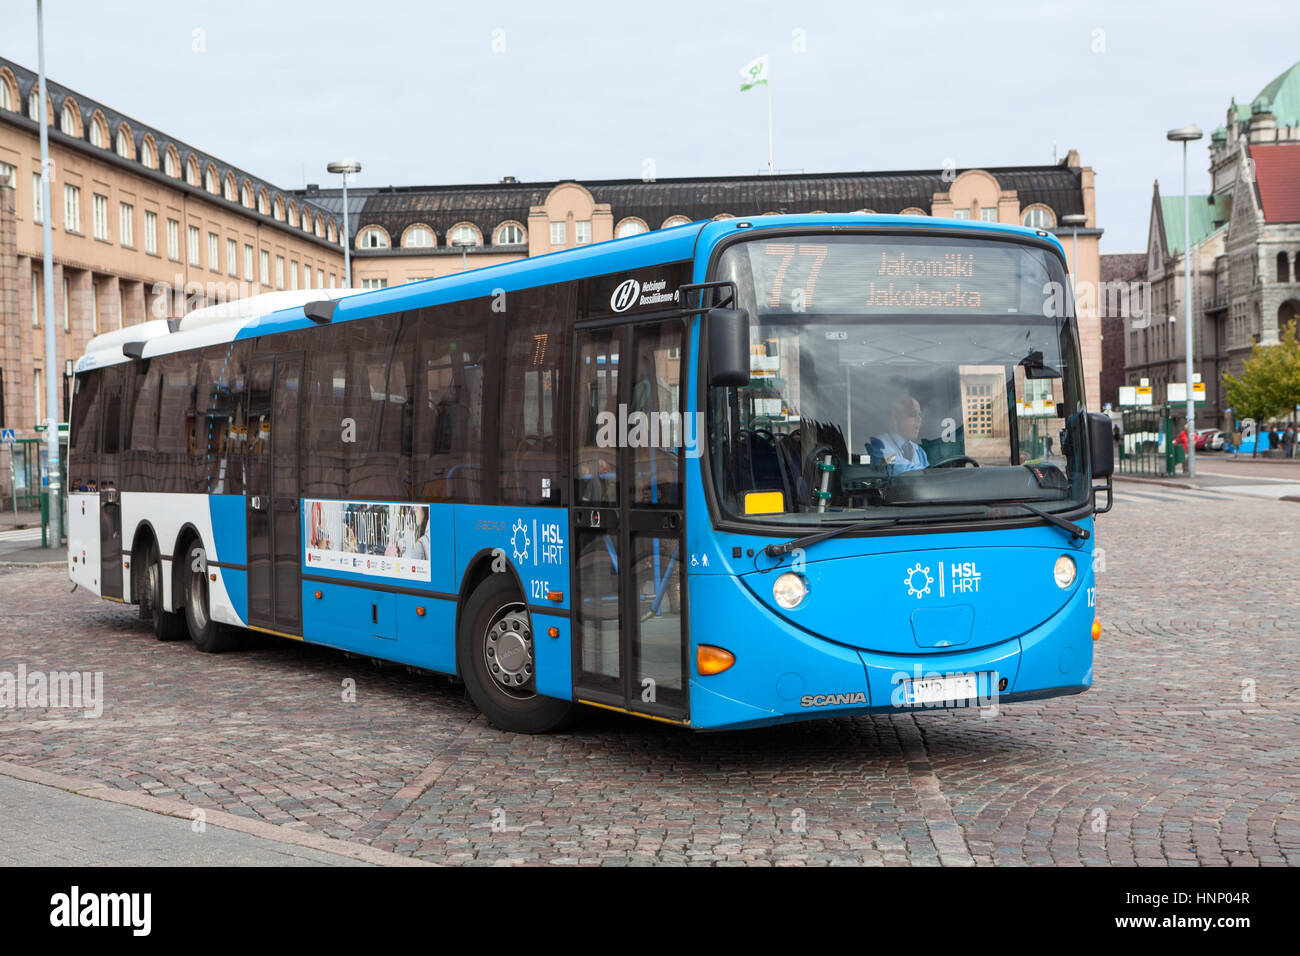 HELSINKI, Finlandia - CIRCA SEP, 2016: Blu passeggero bus pubblico inizia il percorso dalla piattaforma. Il Rautatientori serve come un mozzo centrale per il Finlandese t Foto Stock